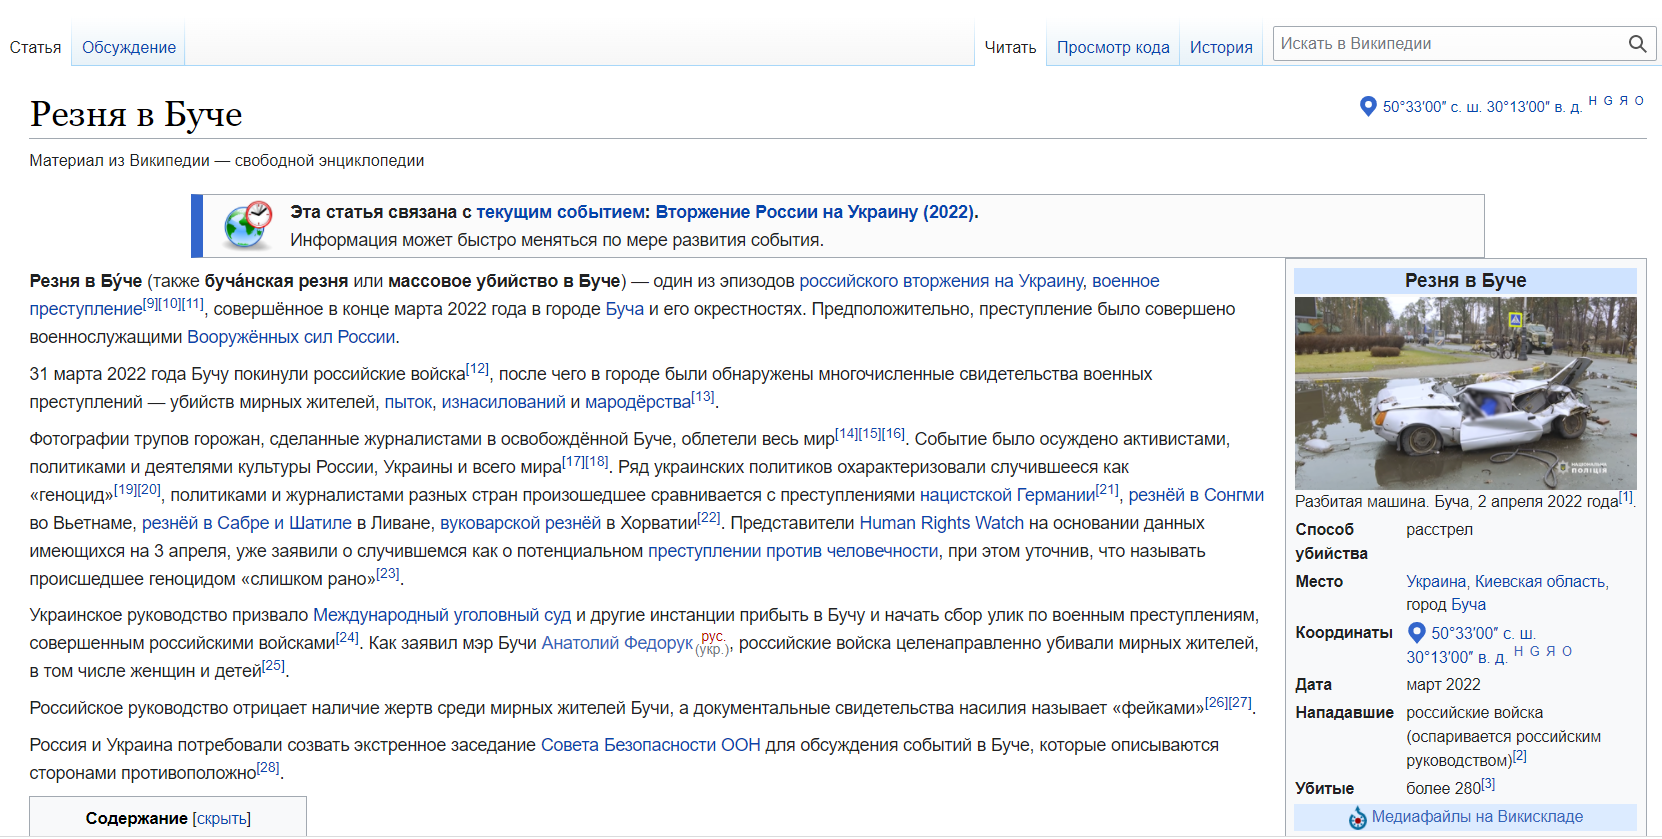 У російській "Вікіпедії" з'явилася стаття про Бучанську різанину: окупанти вбивали в місті людей та влаштовували тортури